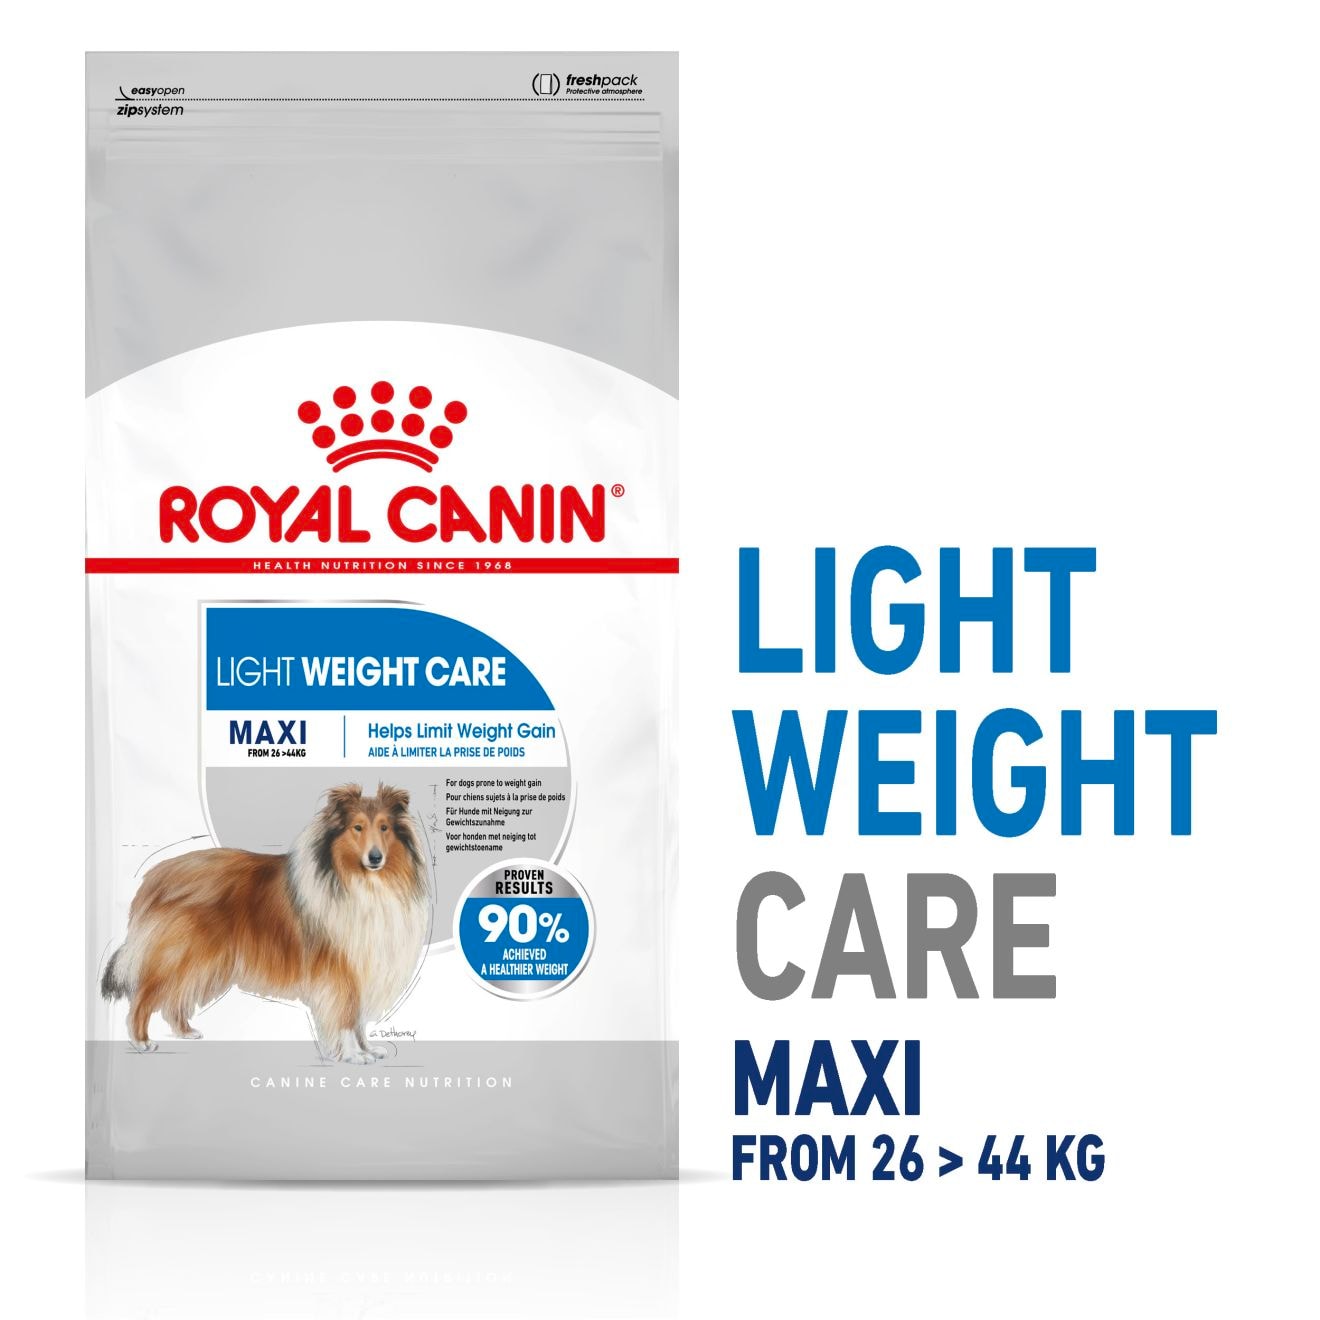 Royal Canin Maxi Light Weight Caret